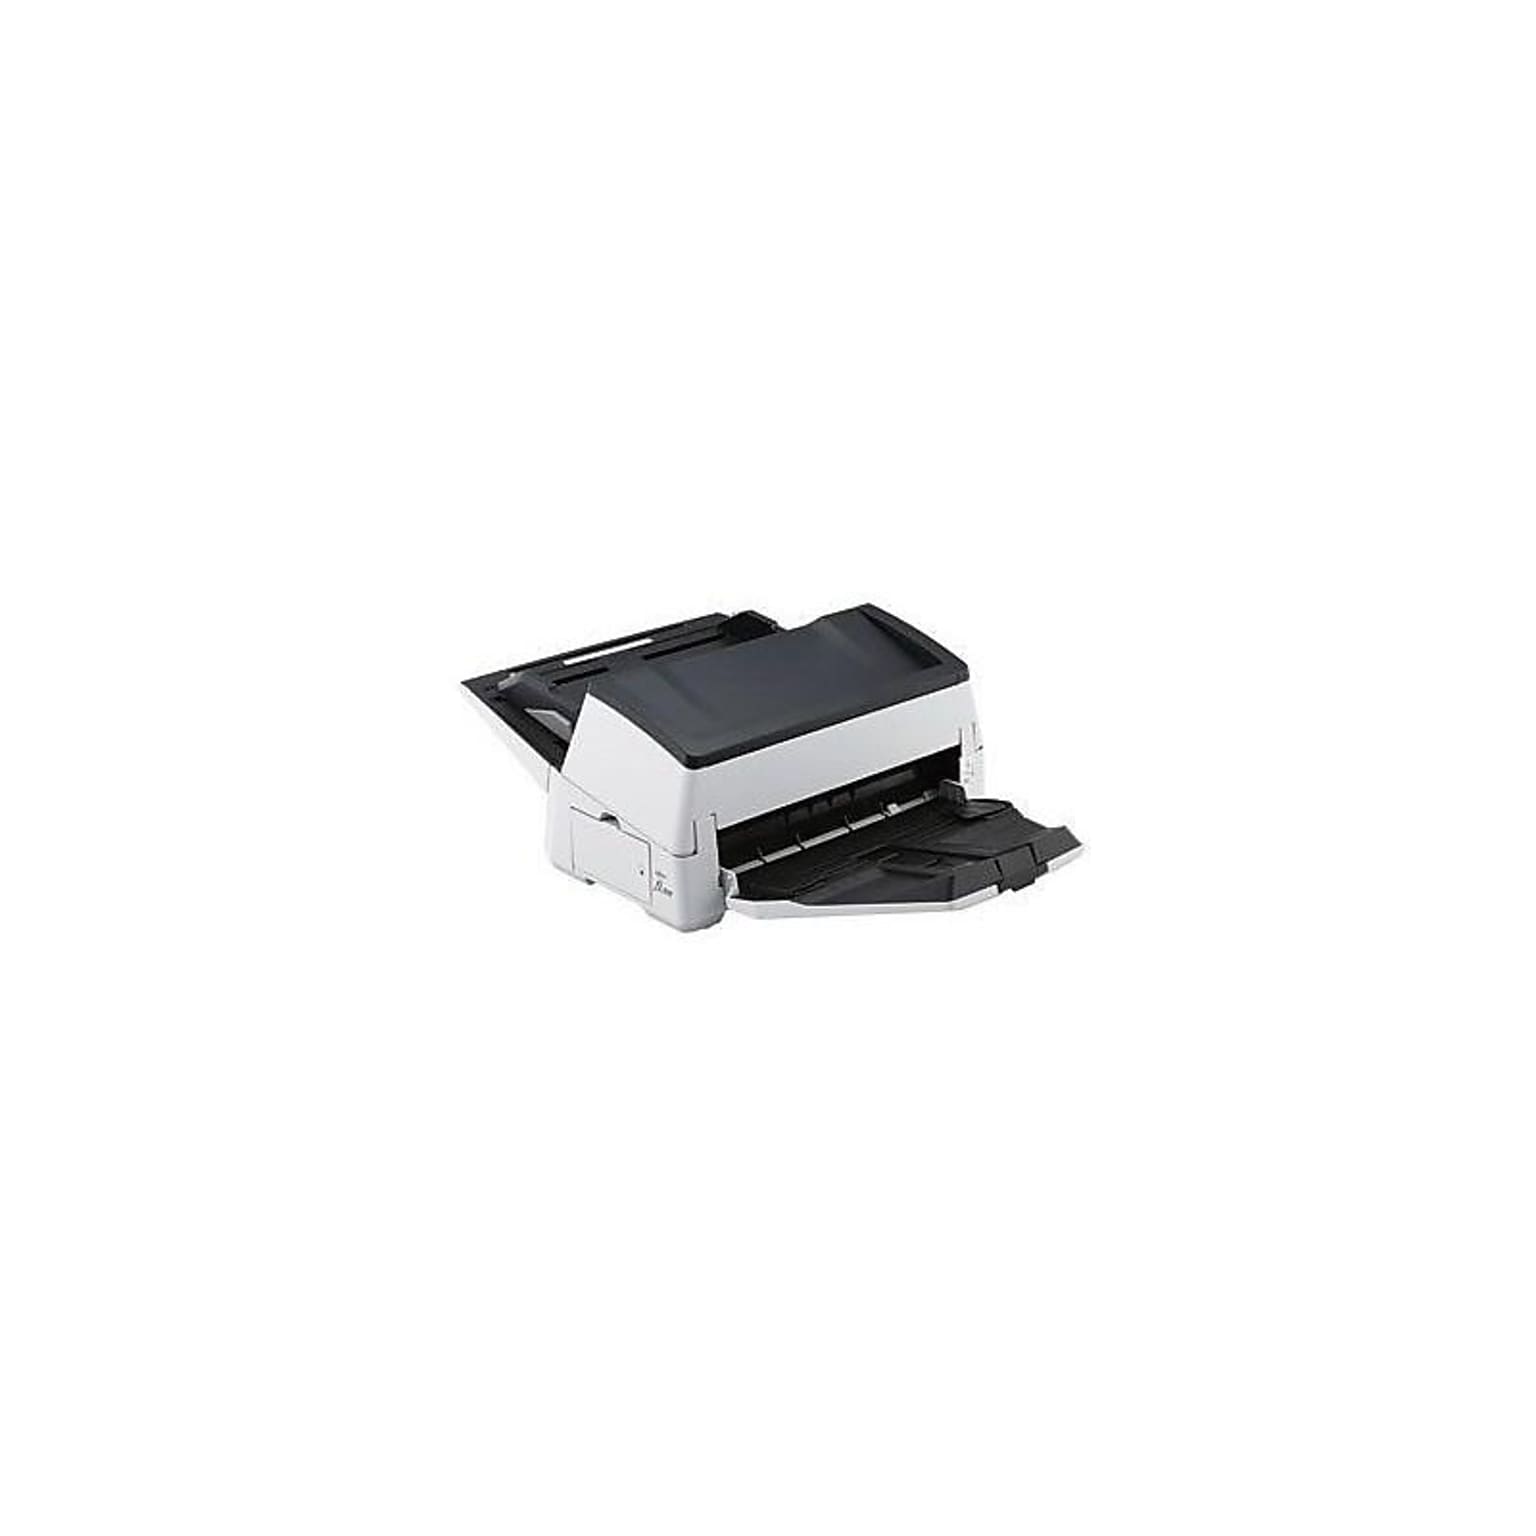 Fujitsu fi-7600 (PA03740-B505) Desktop Scanner, Black/White